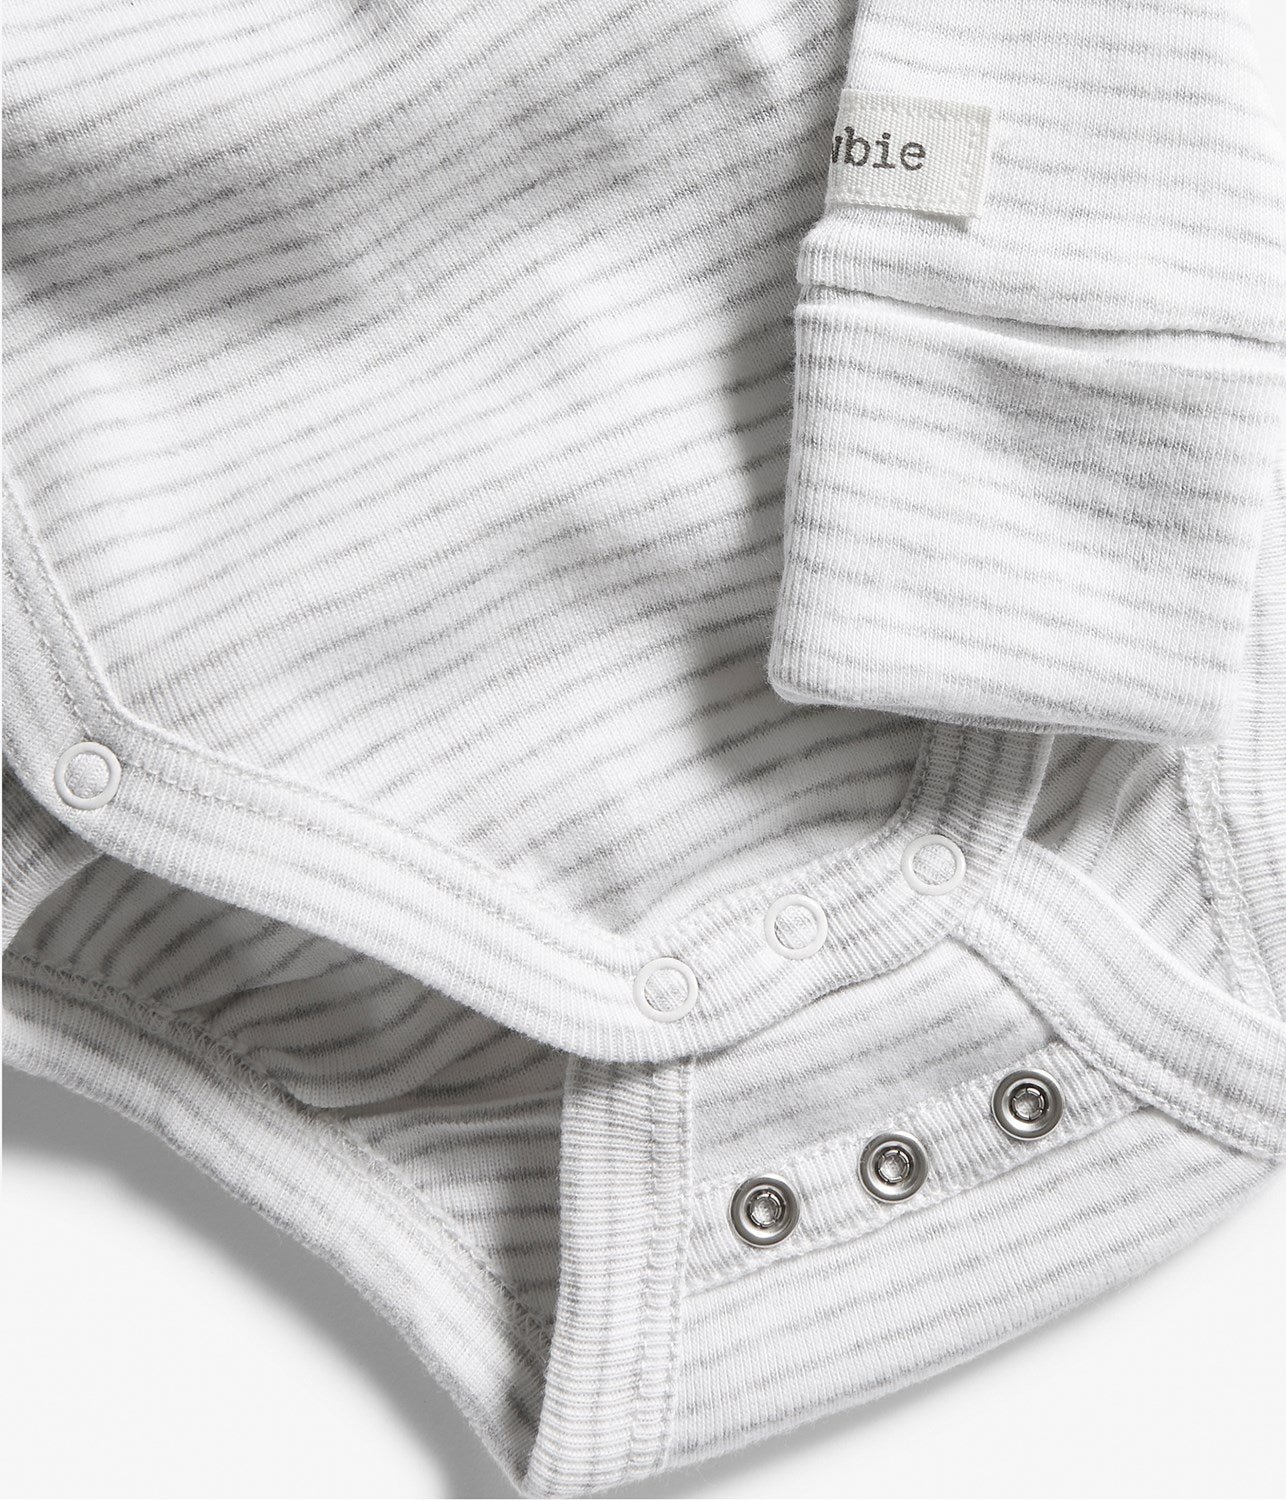 Garment extender for Bodysuits (3-pack Black, Grey, White